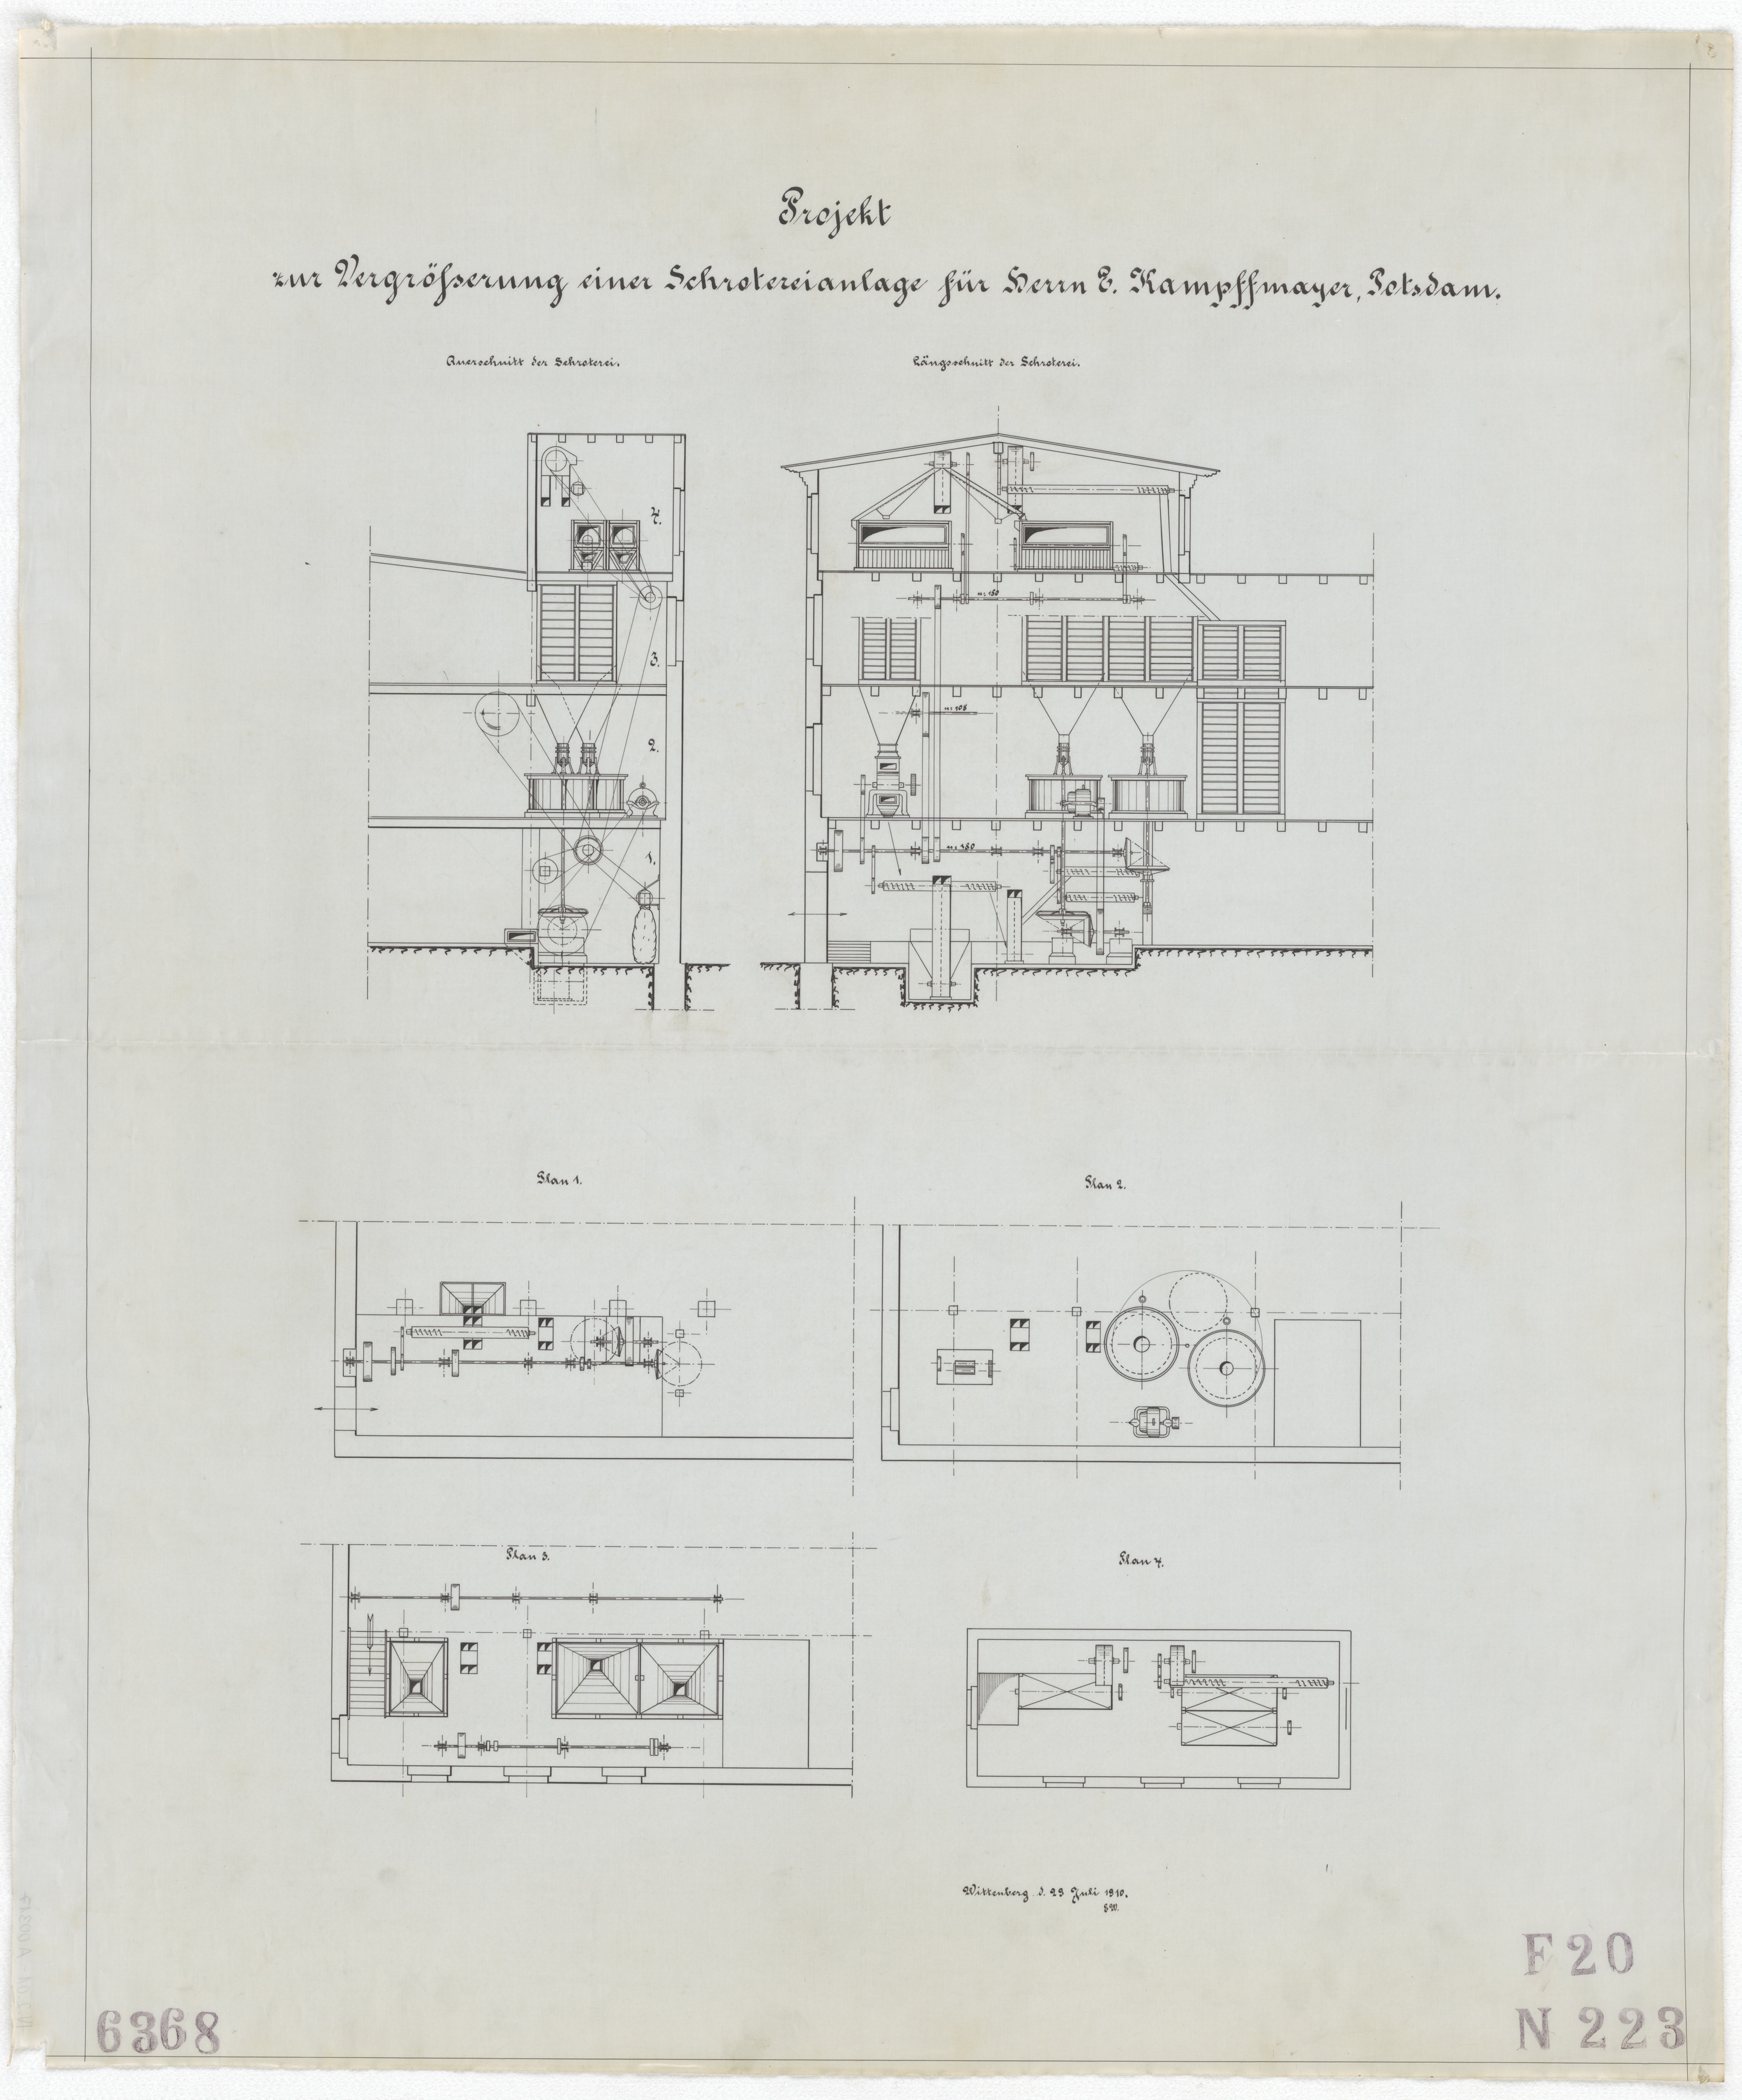 Technische Zeichnung : Projekt zur Vergrößerung einer Schrotanlage für Herrn E. Kampfmayer, Potsdam (Stiftung Deutsches Technikmuseum Berlin CC BY-SA)